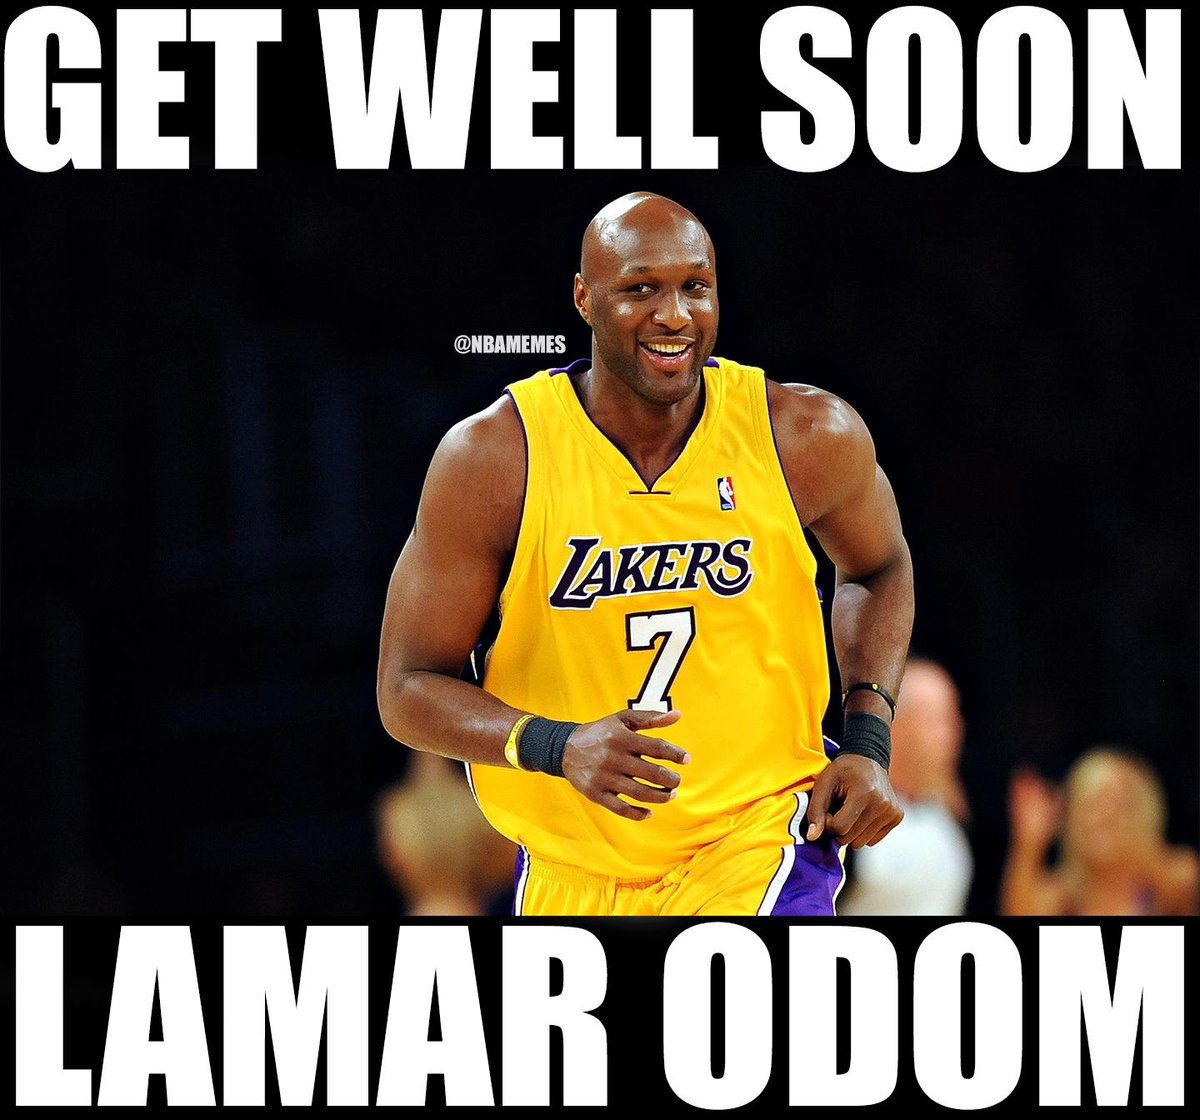 RT to wish Lamar Odom a speedy recovery. 